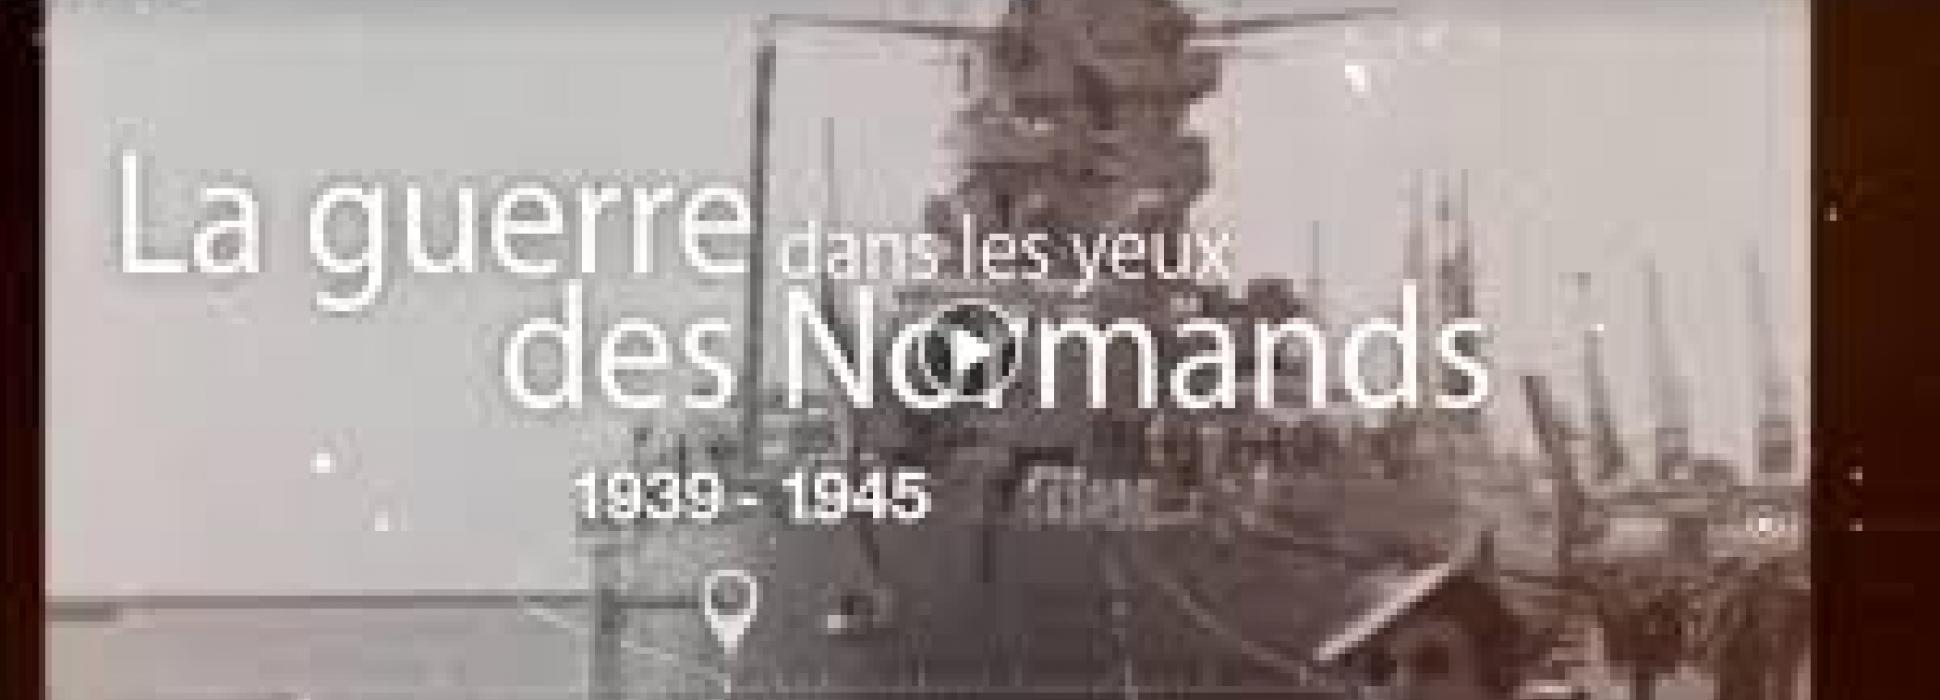 Ouest-France se mobilise pour le D-Day avec sa série "La Guerre dans les yeux des Normands"